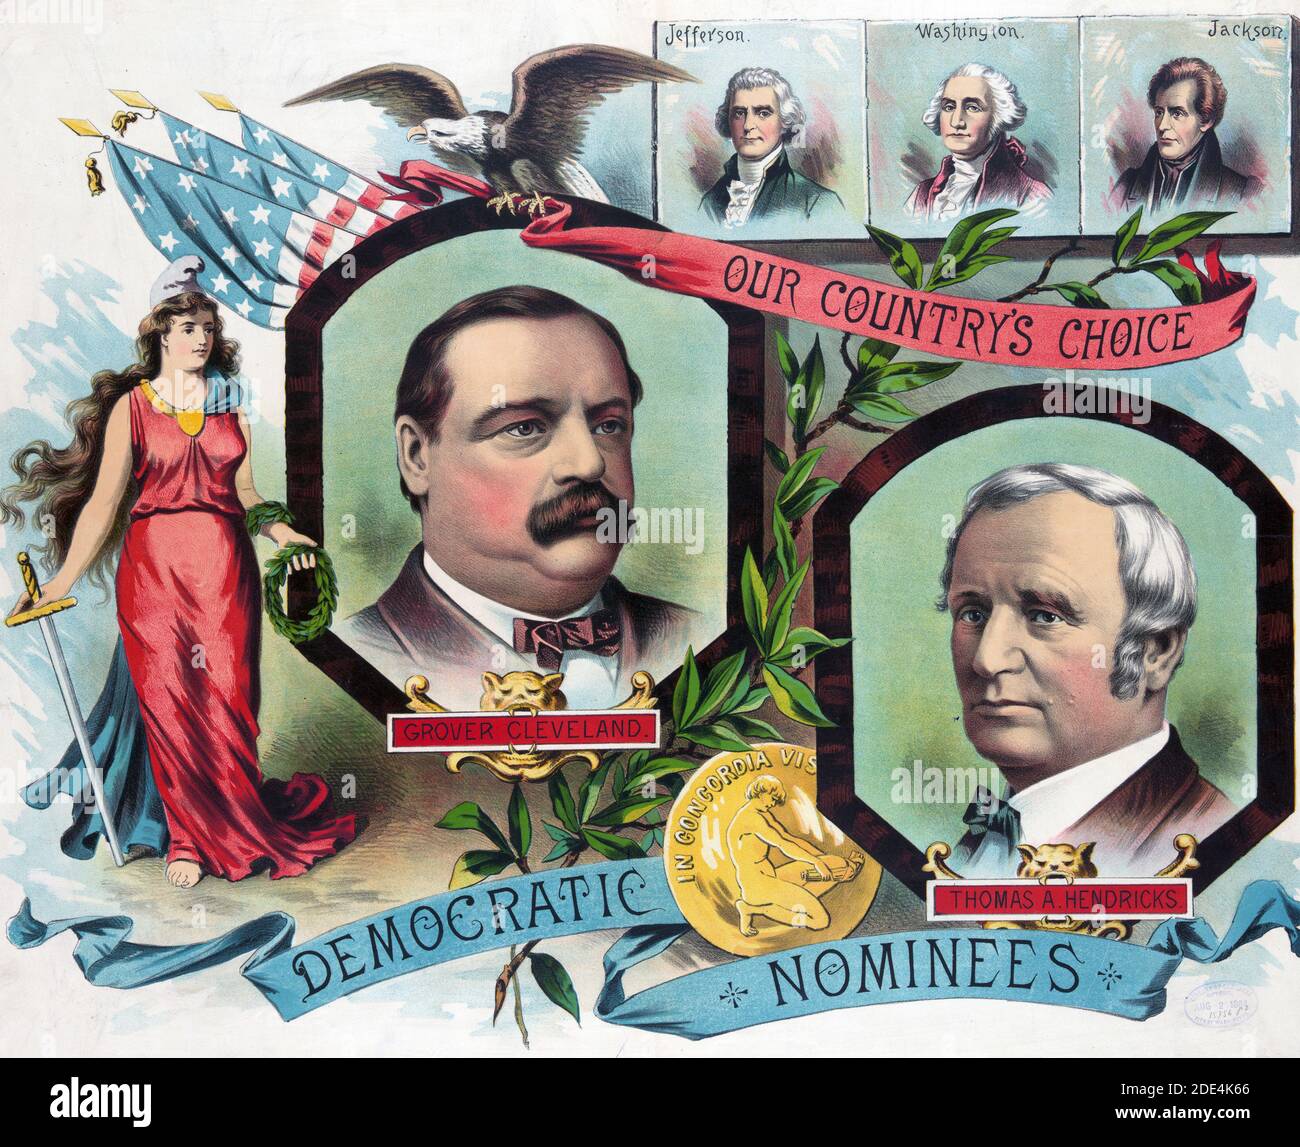 Impression a des tête-et-épaules portraits de Grover Cleveland, Thomas A. Hendricks, les candidats démocrates à la présidence en 1884, aussi des portraits de Jefferson, Washington, et Jackson. Banque D'Images